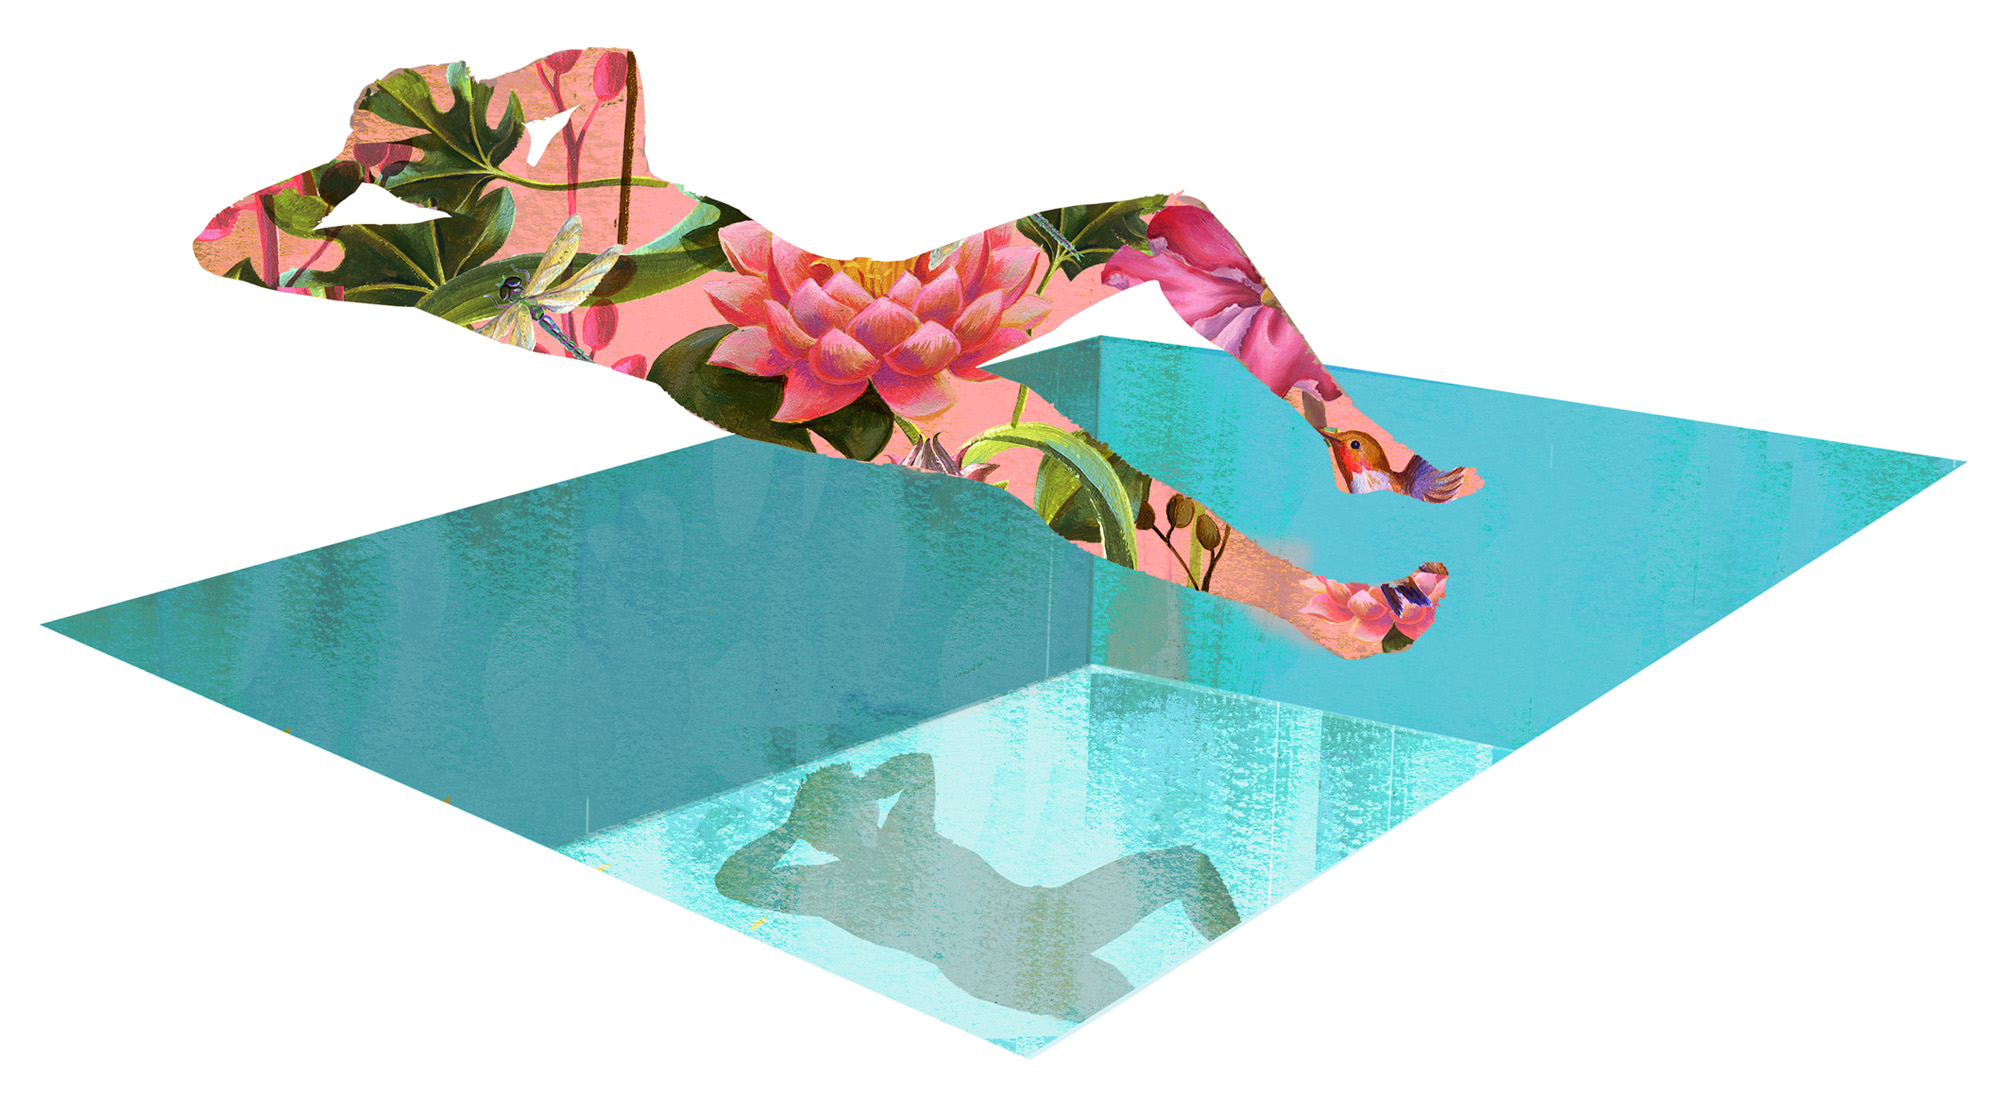 Die Illustration zeigt einen Mann als bunten Scherenschnitt, der über einem Swimming-Pool schwebt und dabei chillt